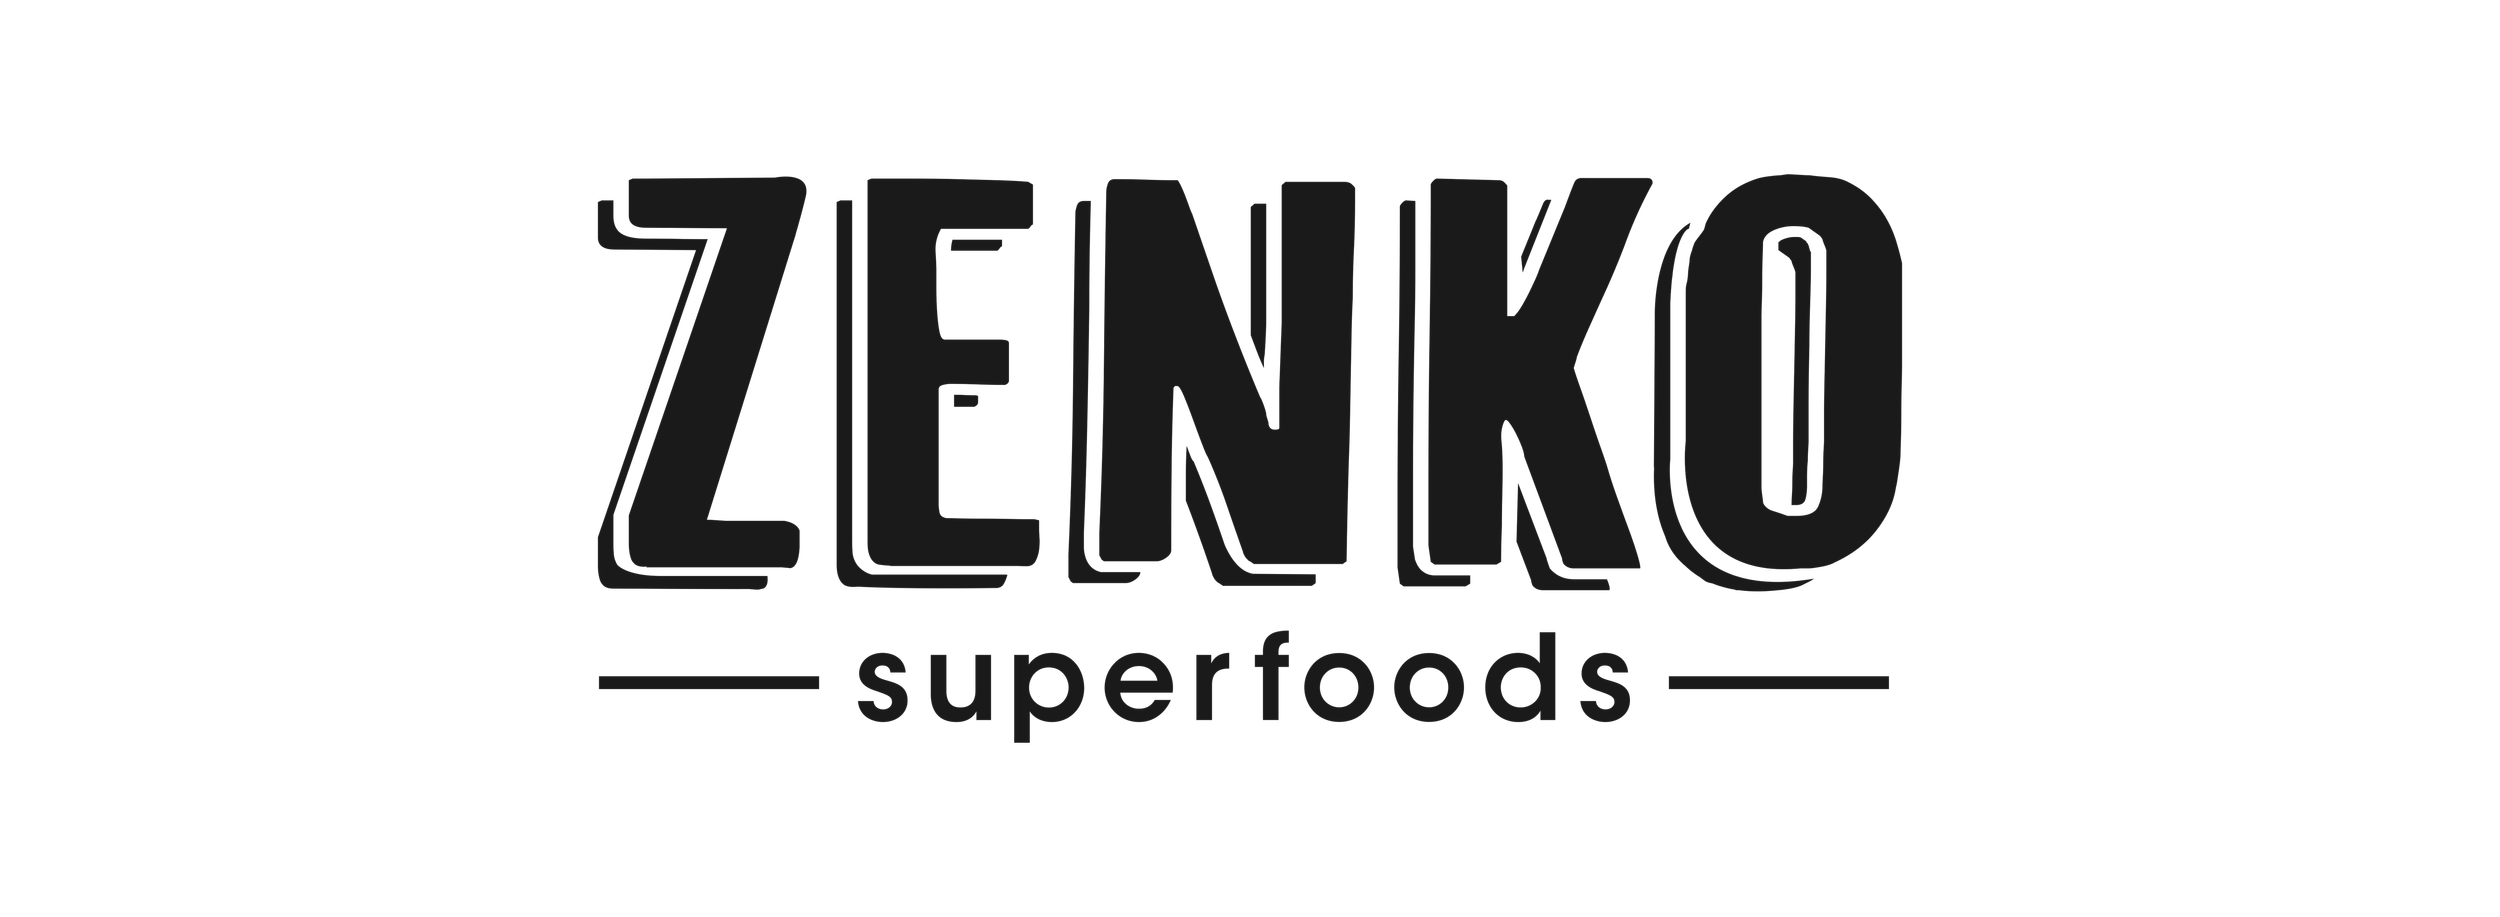 Klanten_Update_2Zenko-Super-Foods.png